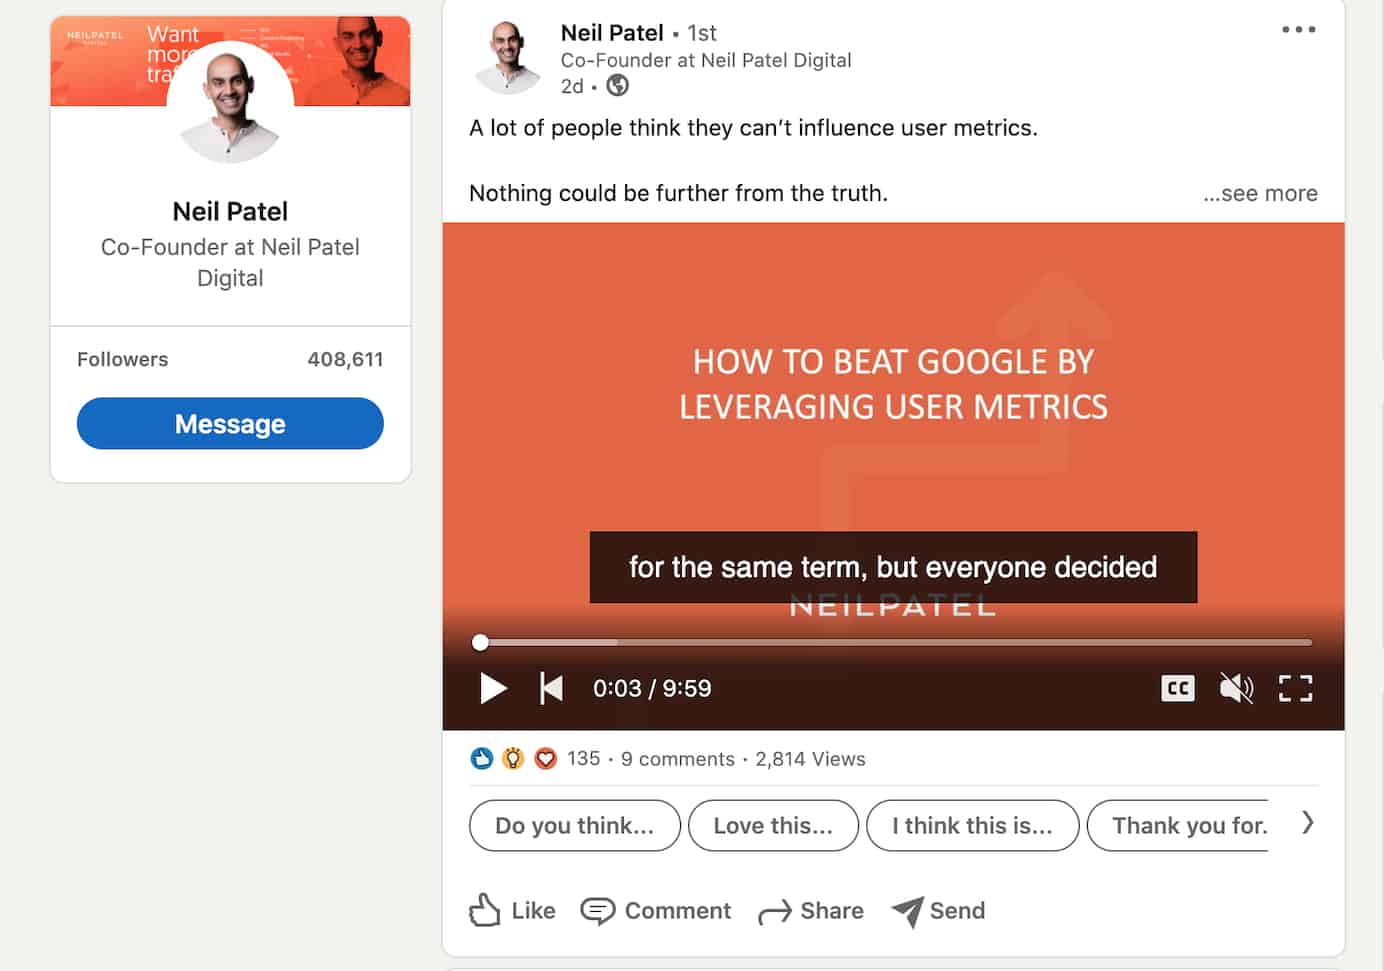 Neil Patel activity on LinkedIn